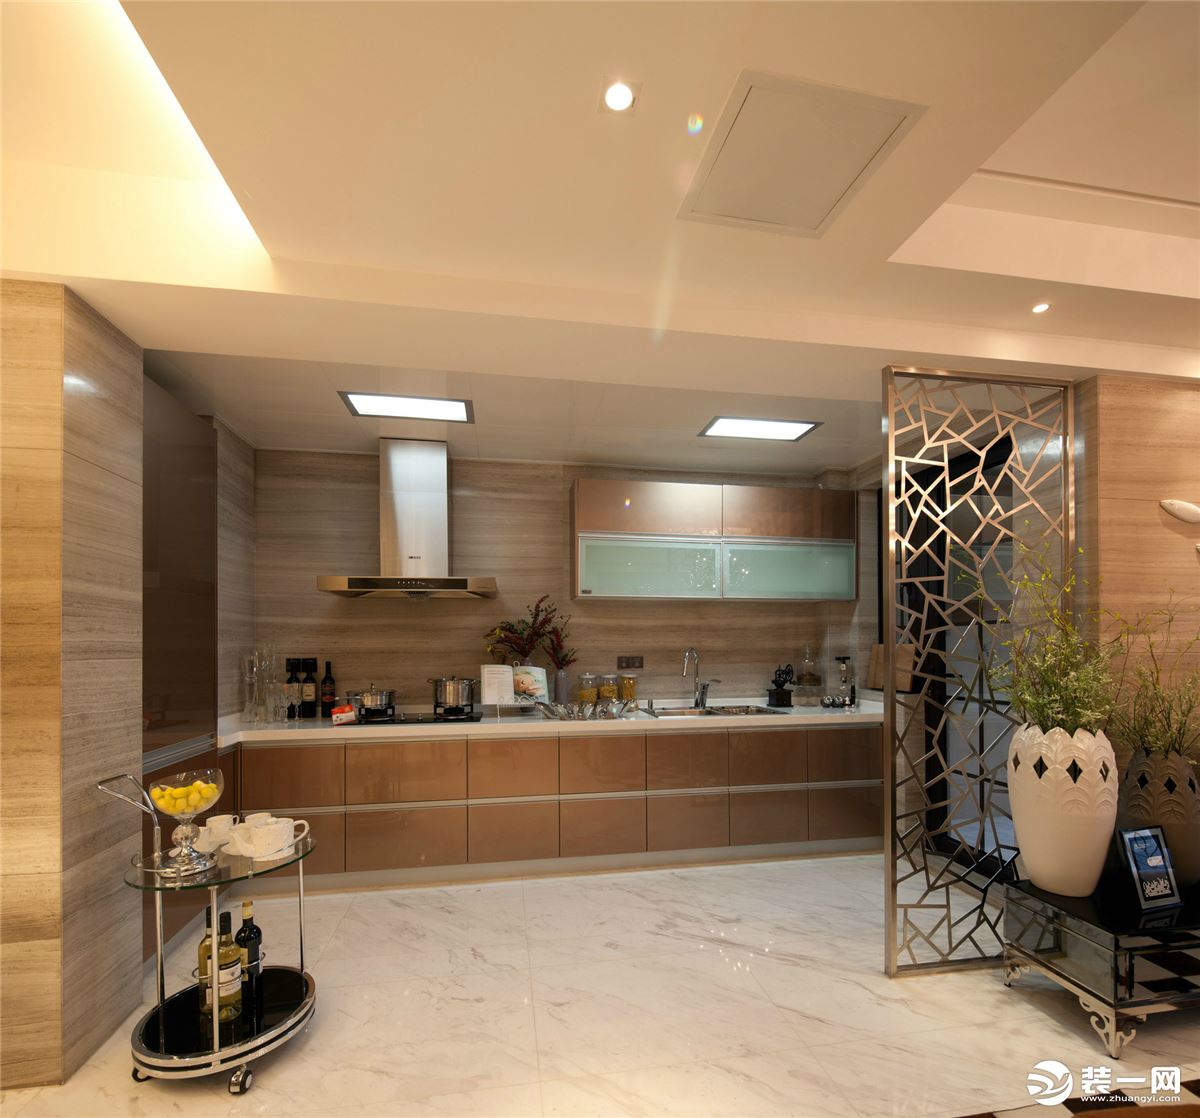  嘉悦江庭70平方两居室现代风格厨房装修效果图